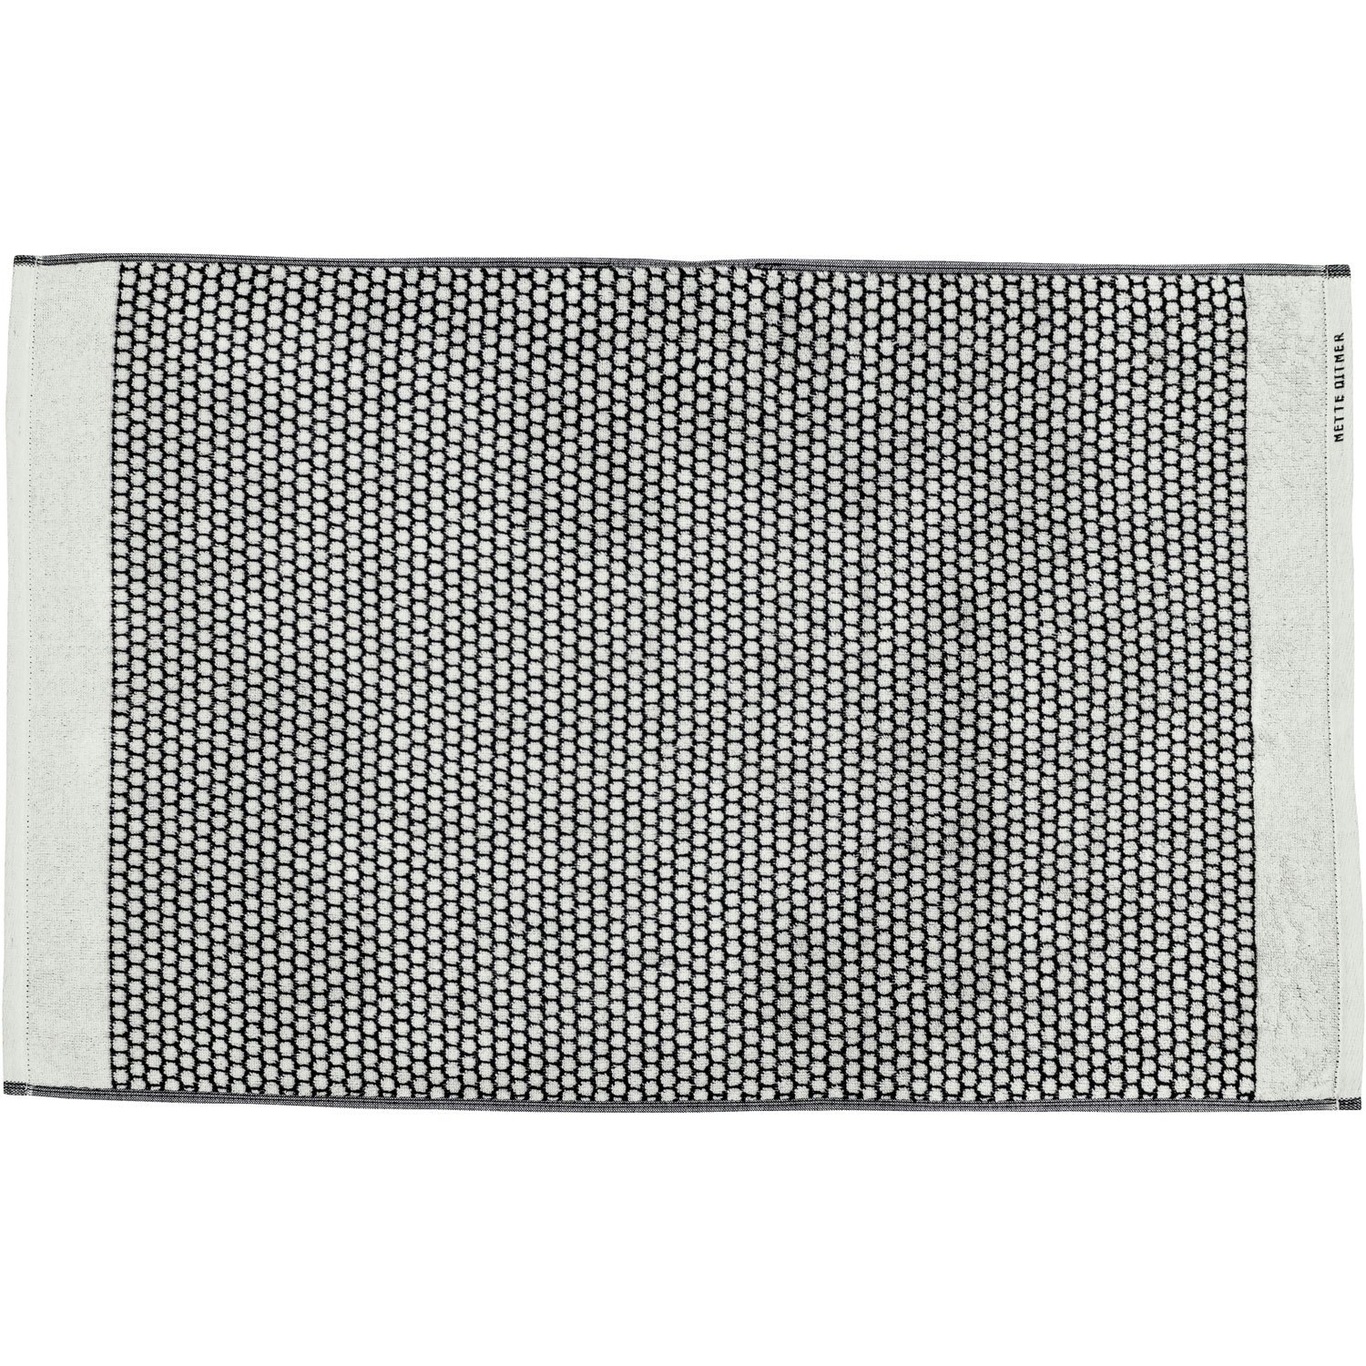 GRID Badematte 50x80 cm, Sort/Off-white